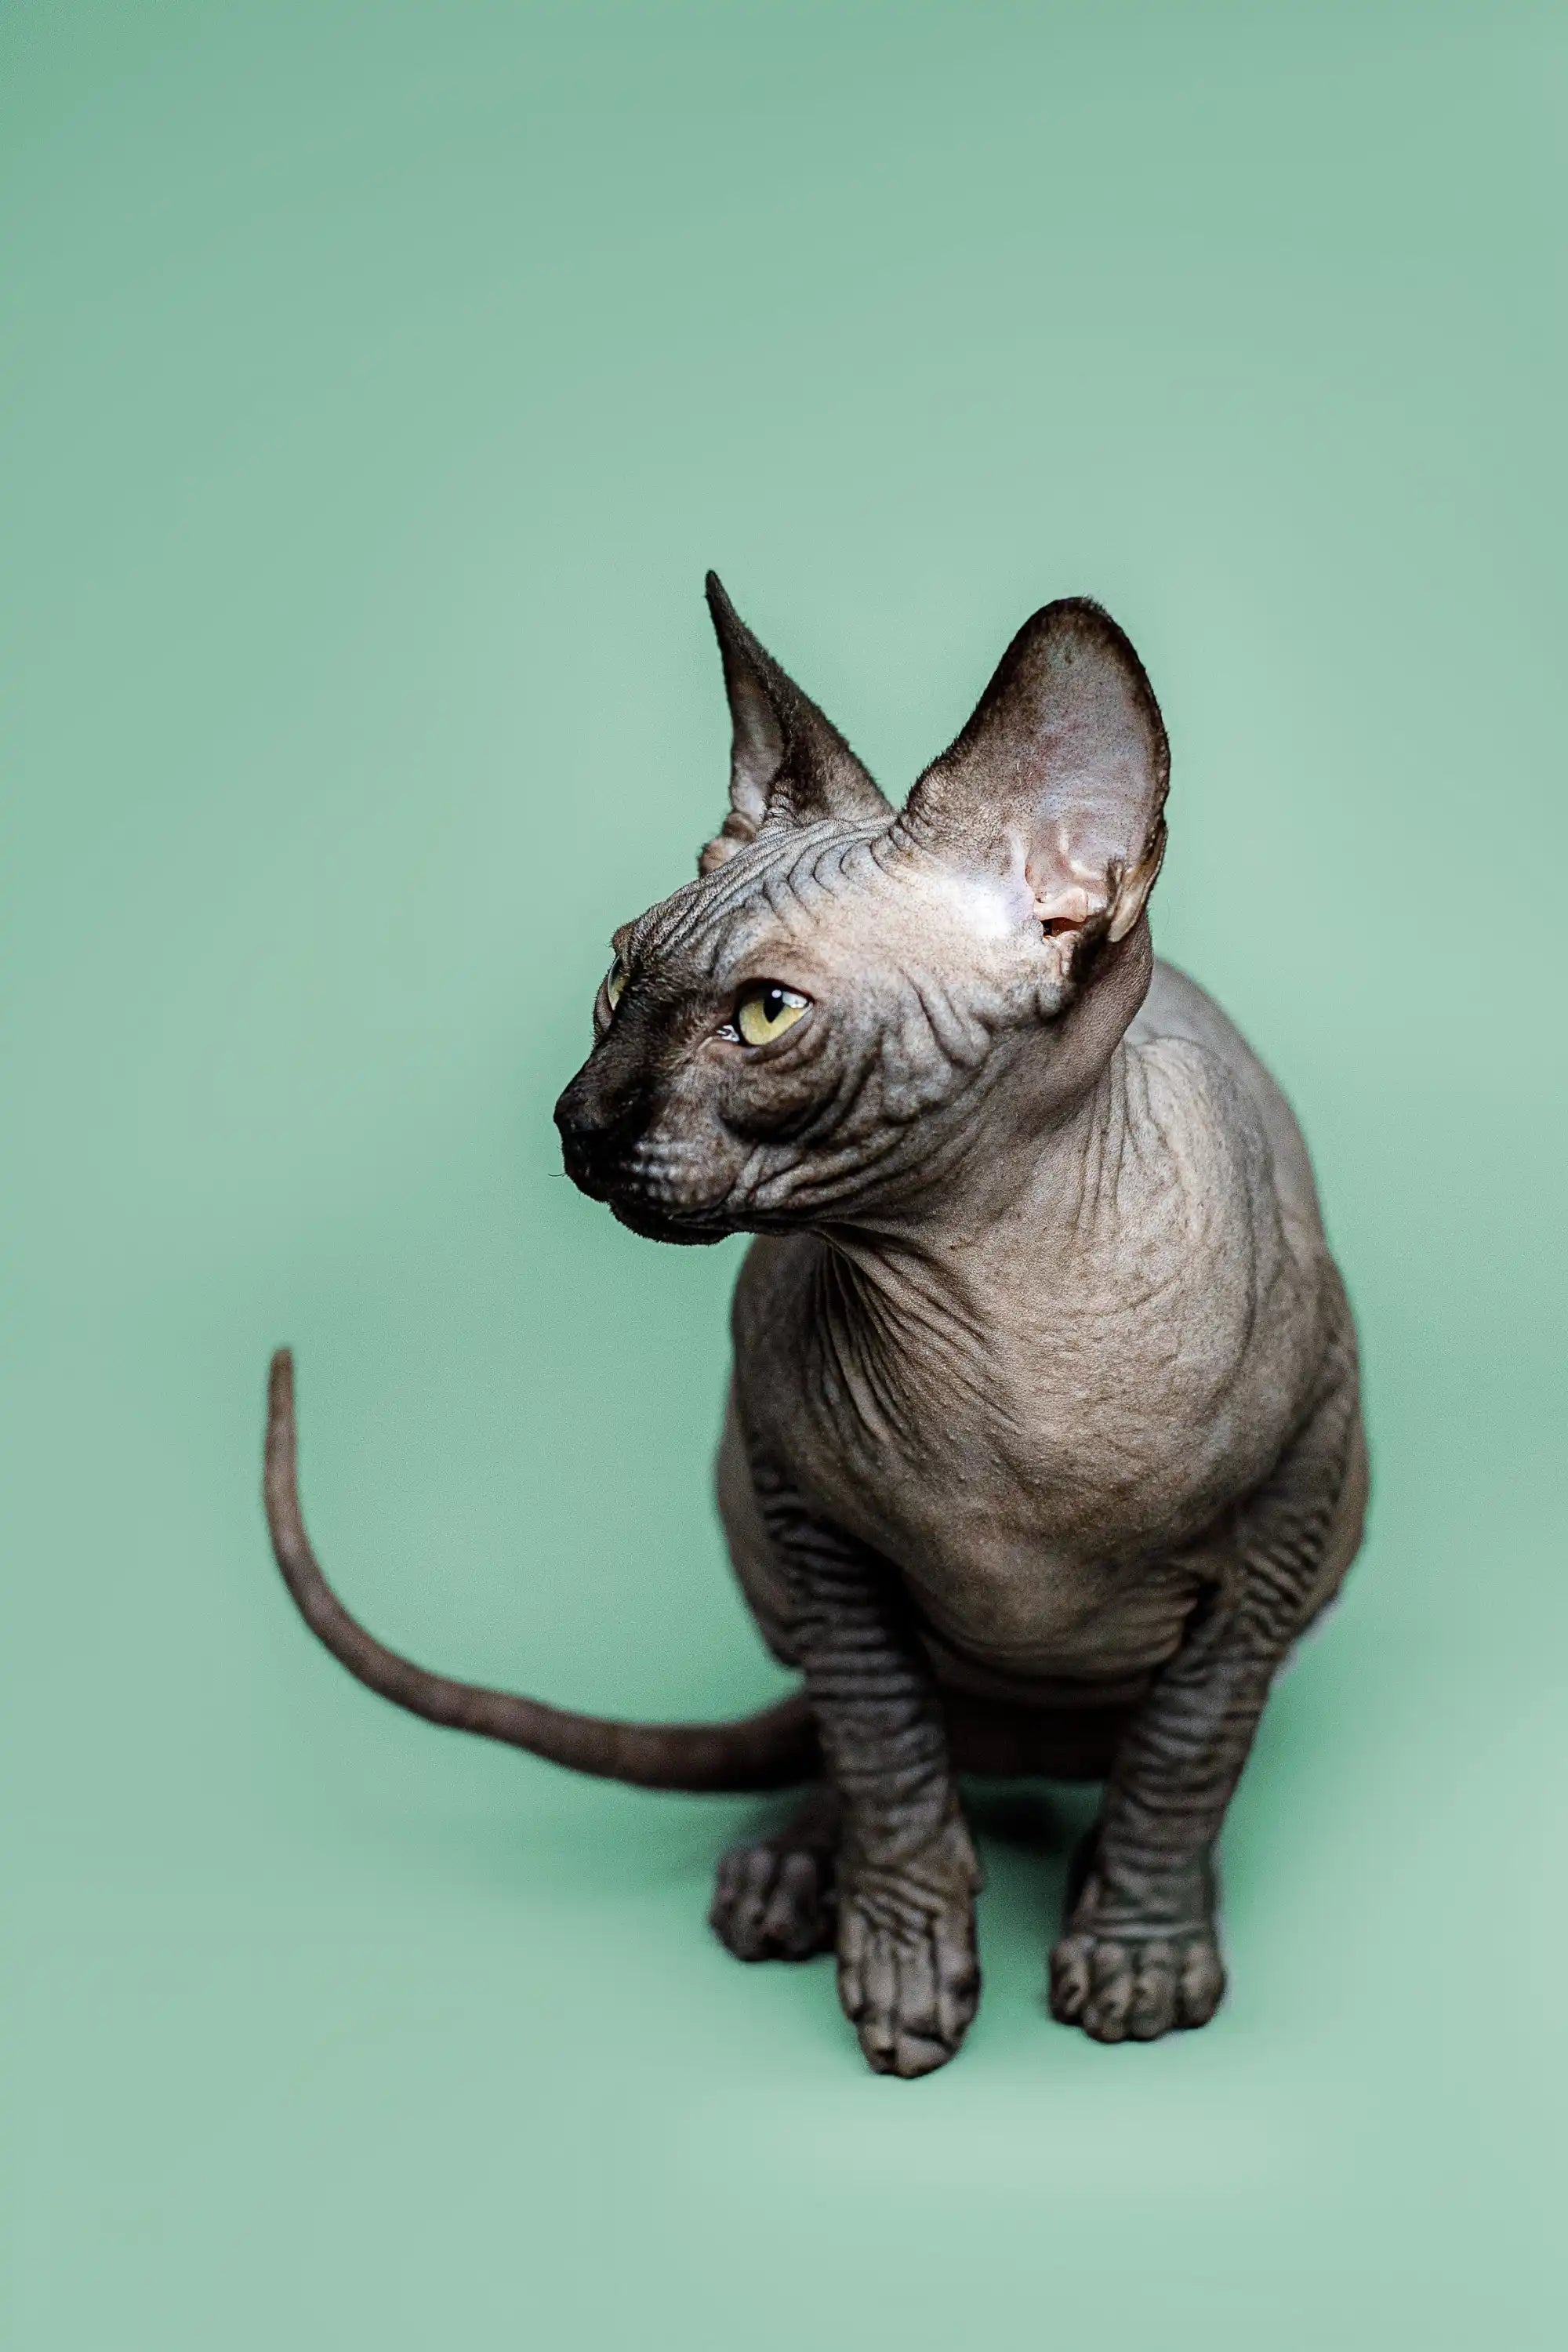 Sphynx Cats for Sale | Kittens For Zephyr | Kitten